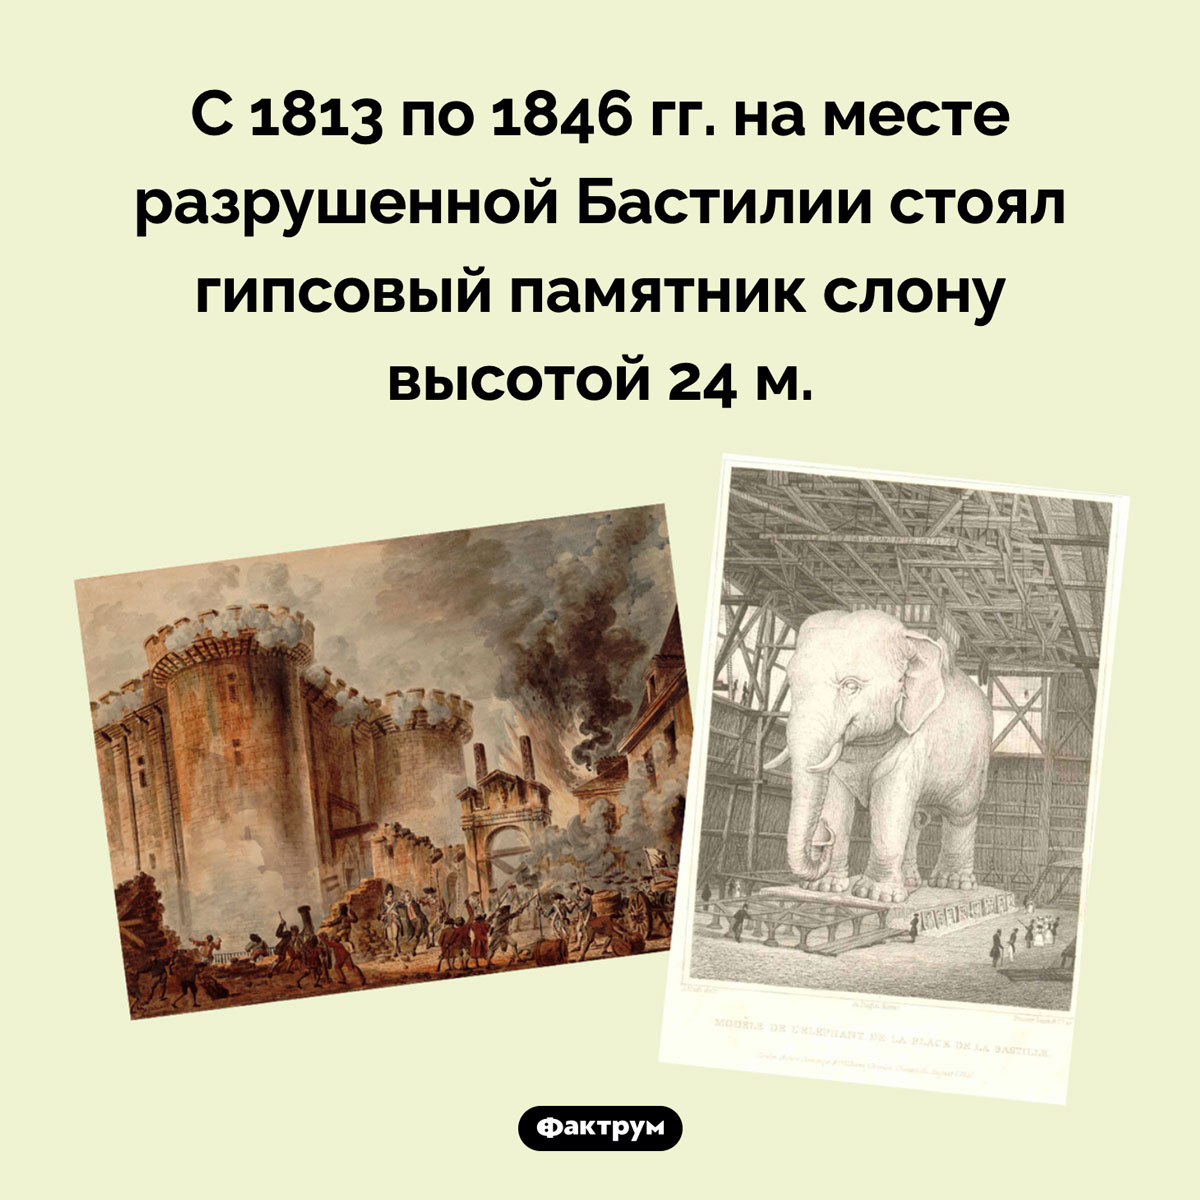 На месте разрушенной Бастилии был памятник слону. С 1813 по 1846 гг. на месте разрушенной Бастилии стоял гипсовый памятник слону высотой 24 м.